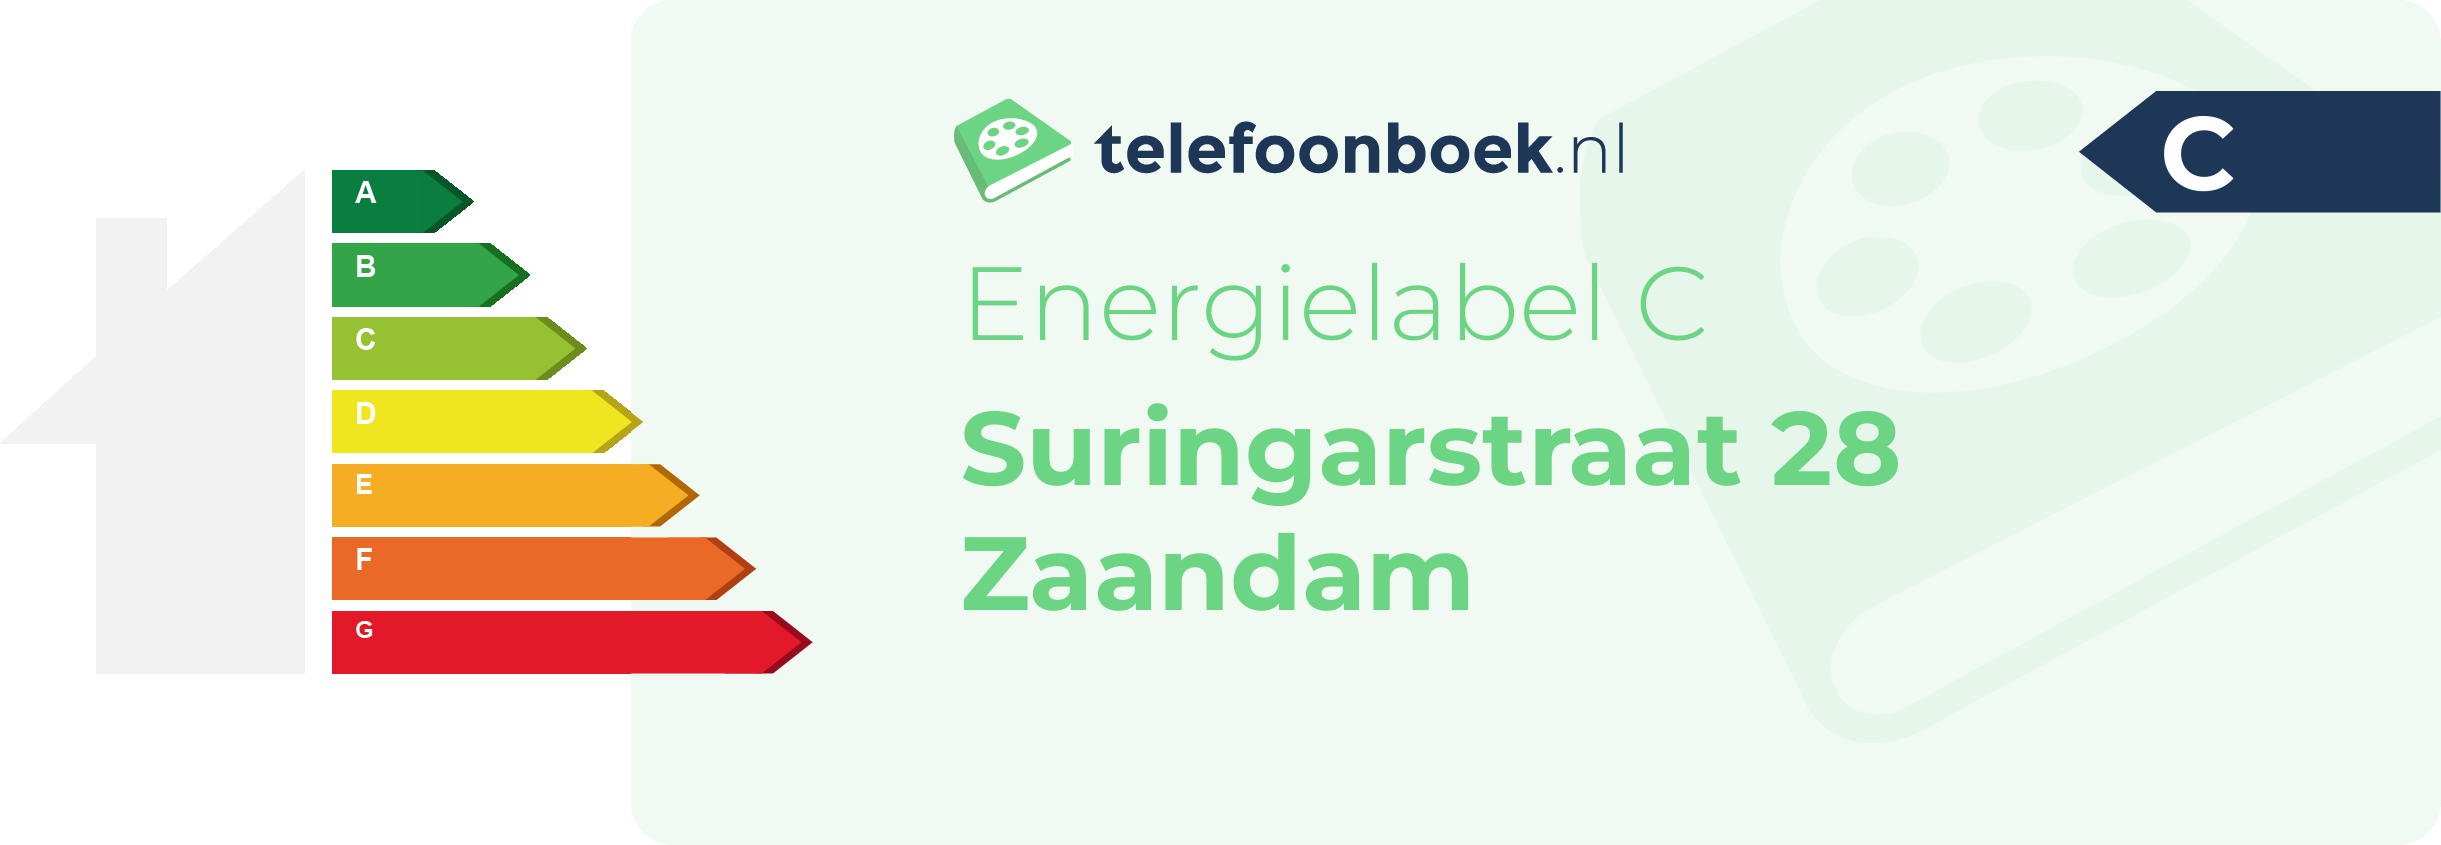 Energielabel Suringarstraat 28 Zaandam